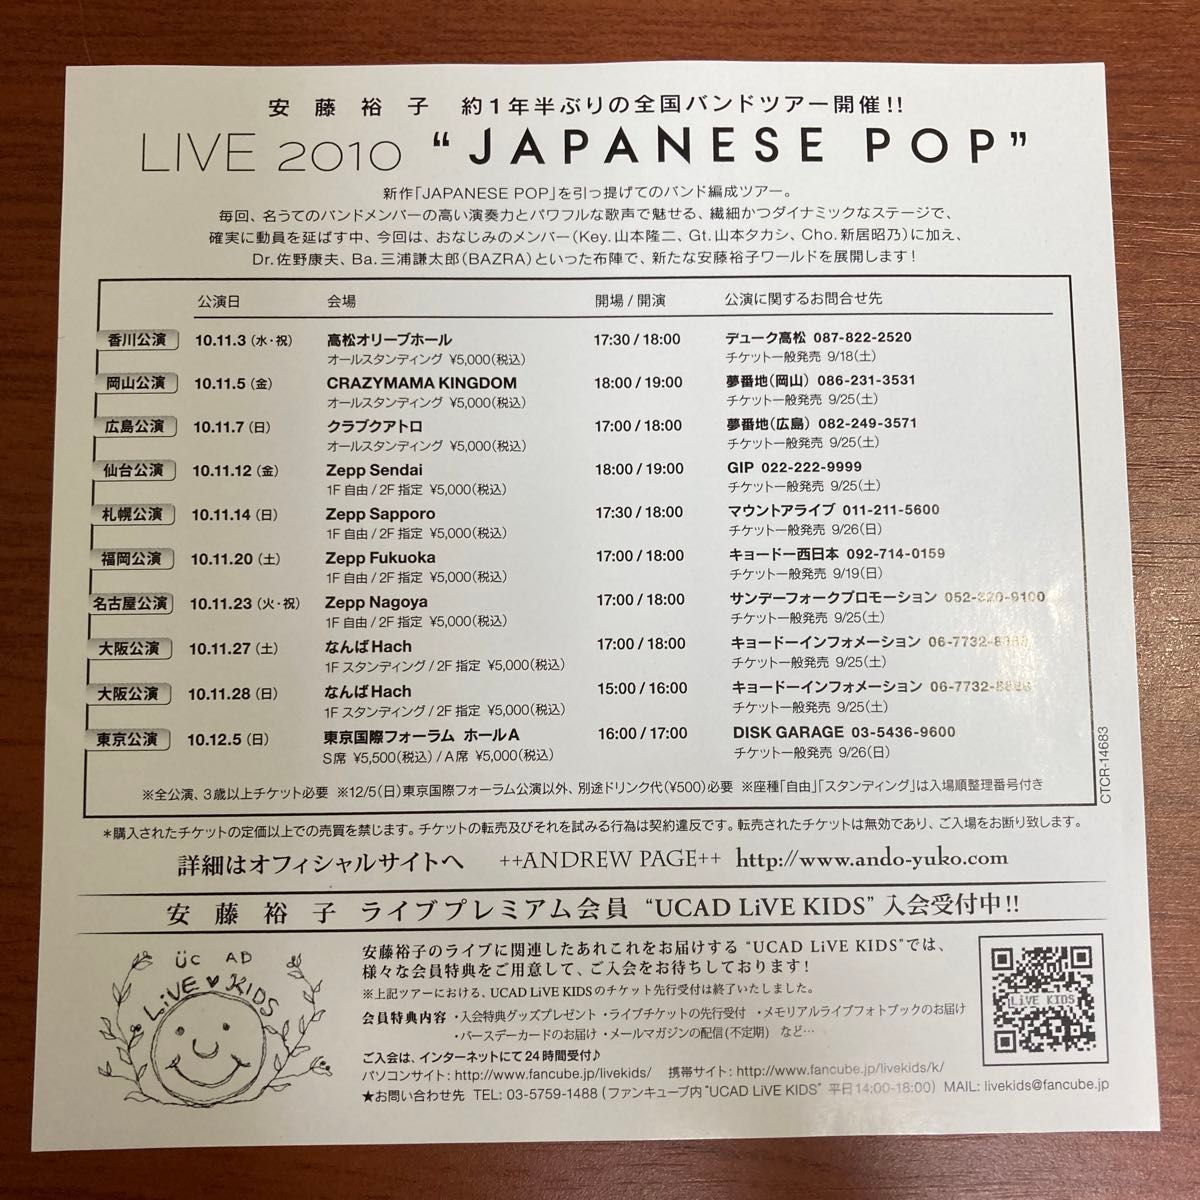 【良好・帯あり】安藤裕子　JAPANESE POP 5th ジャパニーズポップ